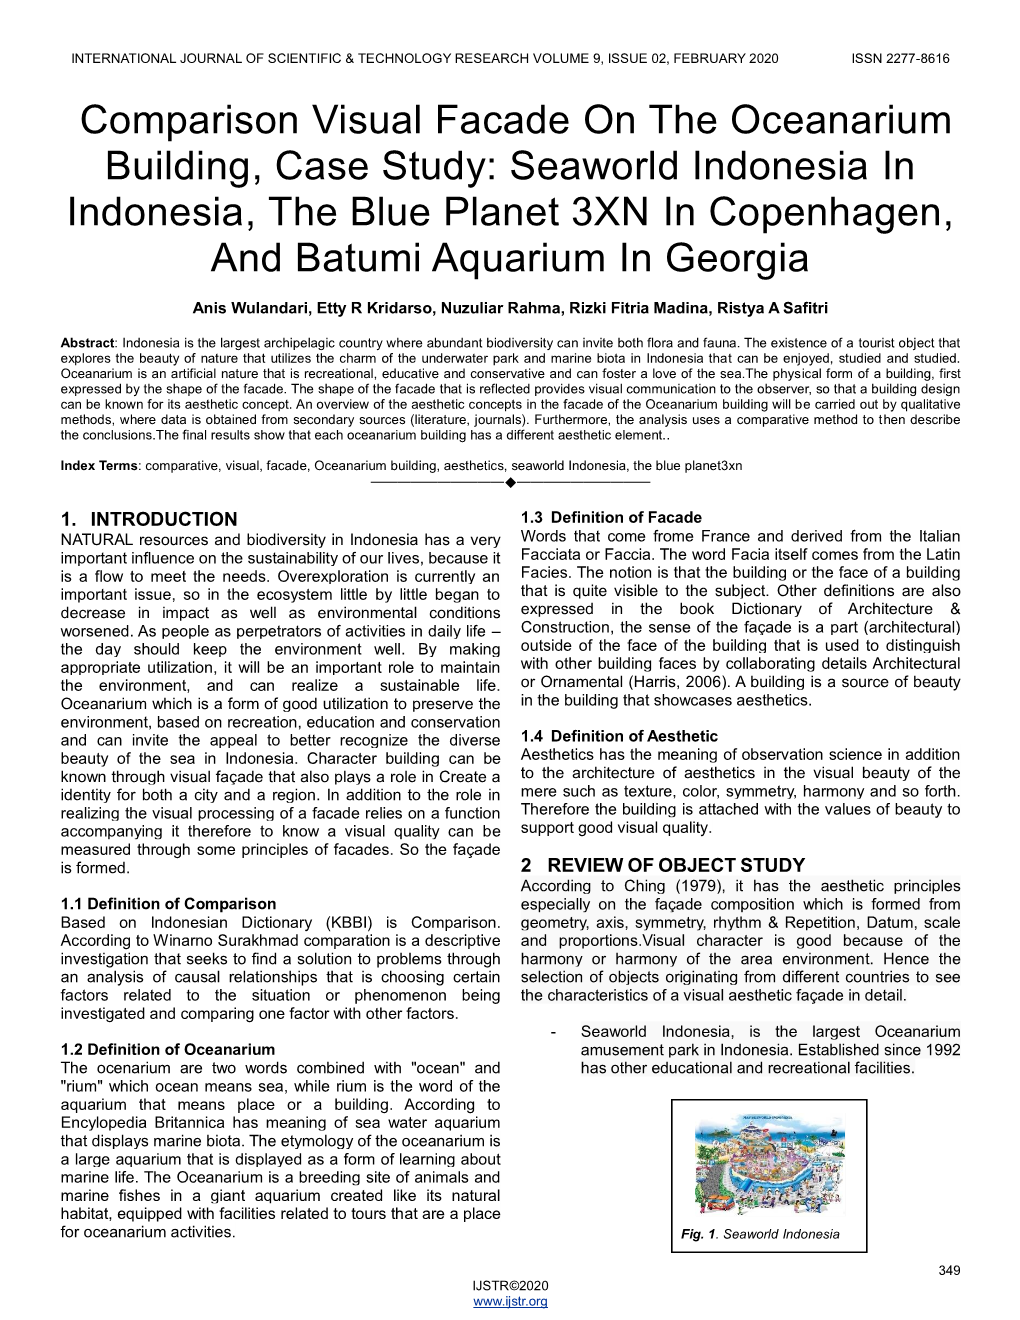 Comparison Visual Facade on the Oceanarium Building, Case Study: Seaworld Indonesia in Indonesia, the Blue Planet 3XN in Copenhagen, and Batumi Aquarium in Georgia